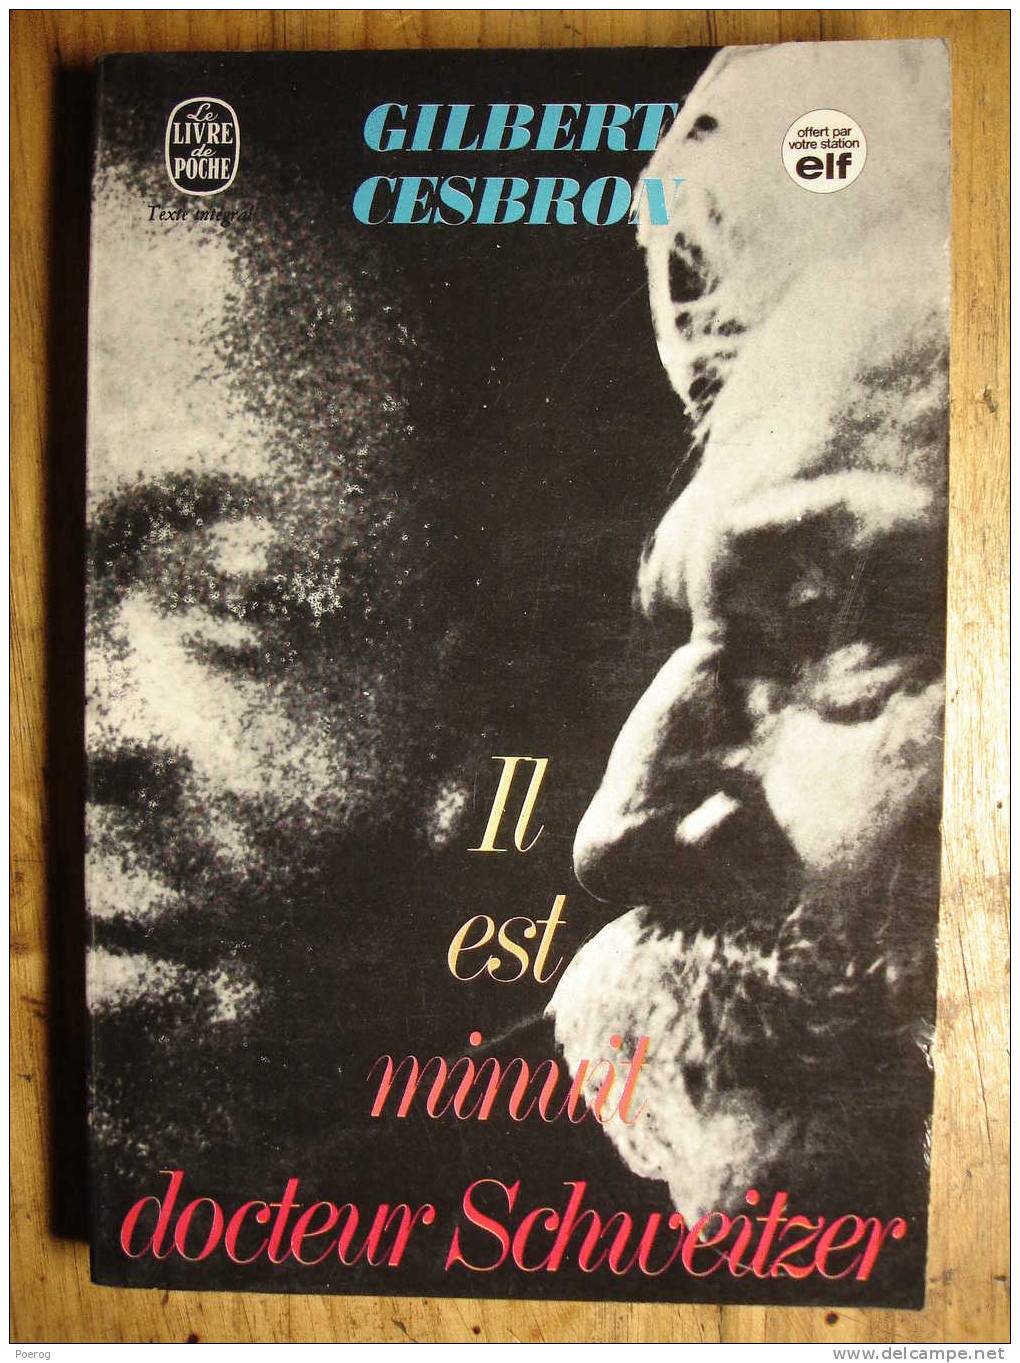 GILBERT CESBRON - IL EST MINUIT DOCTEUR SCHWEITZER - LE LIVRE DE POCHE ELF N°1663 - 1972 - Autores Franceses